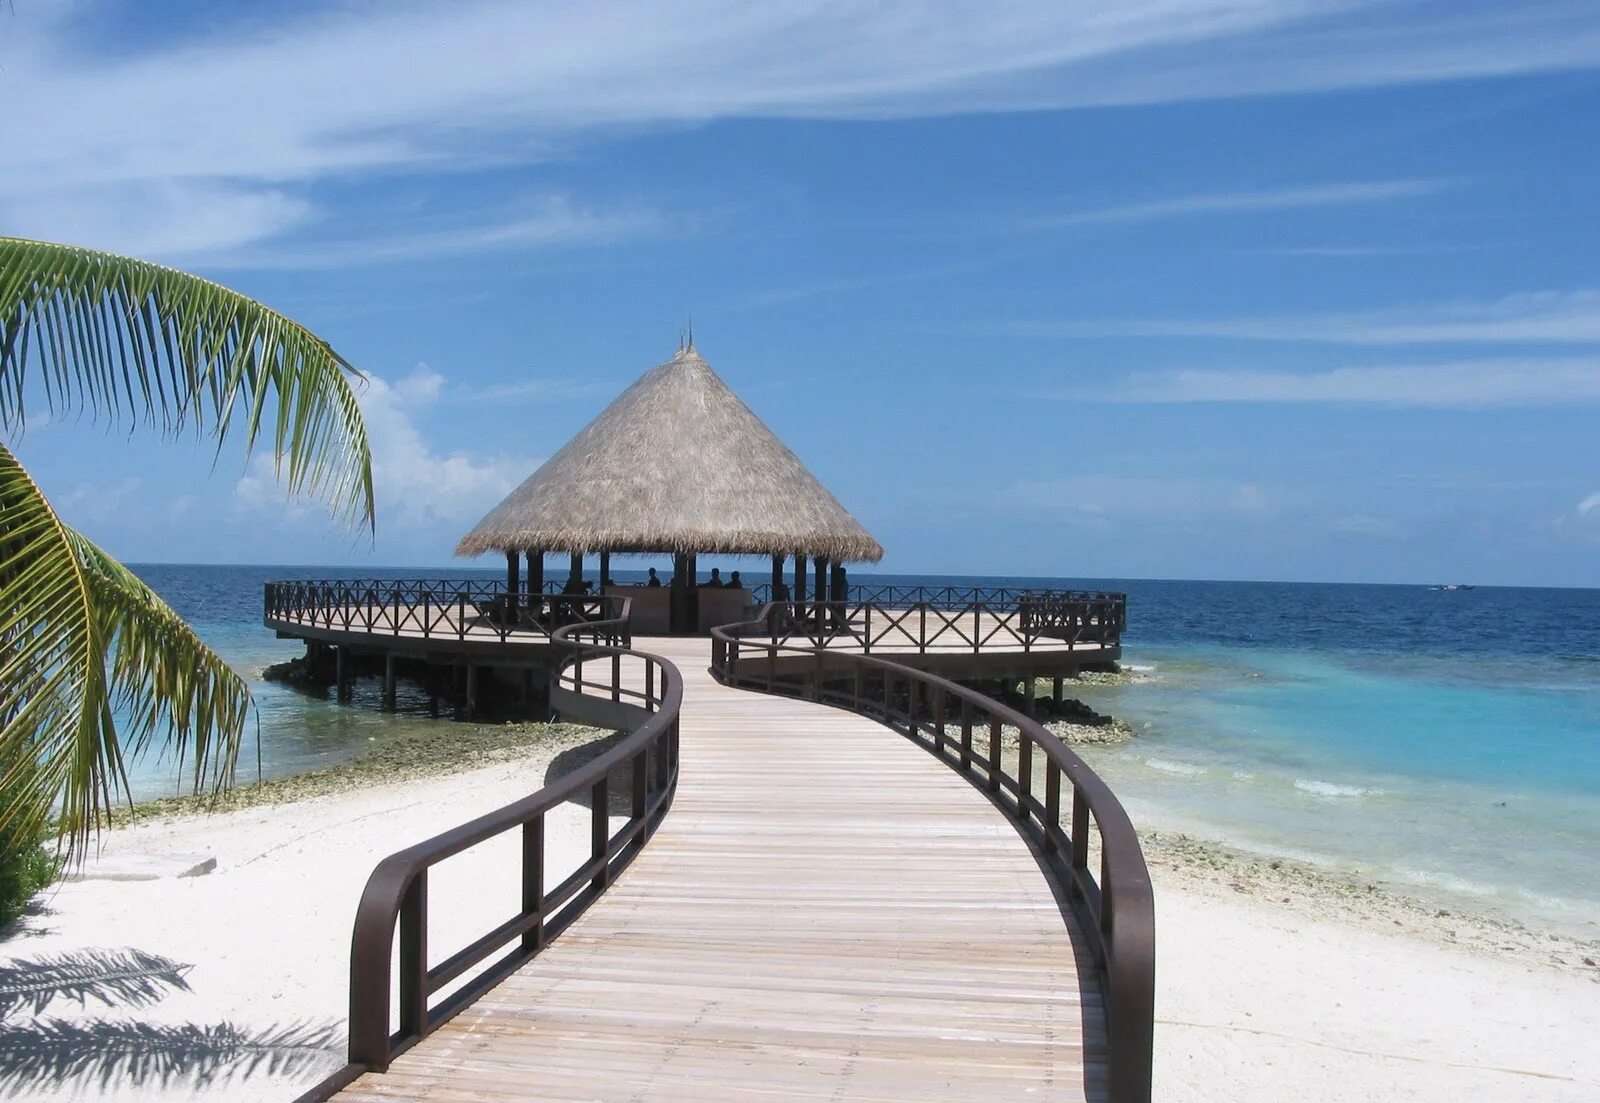 Bandos island resort. Bandos Maldives 4. Мальдивы Bandos. Bandos Island Resort 4*. Bandos Island Resort & Spa.